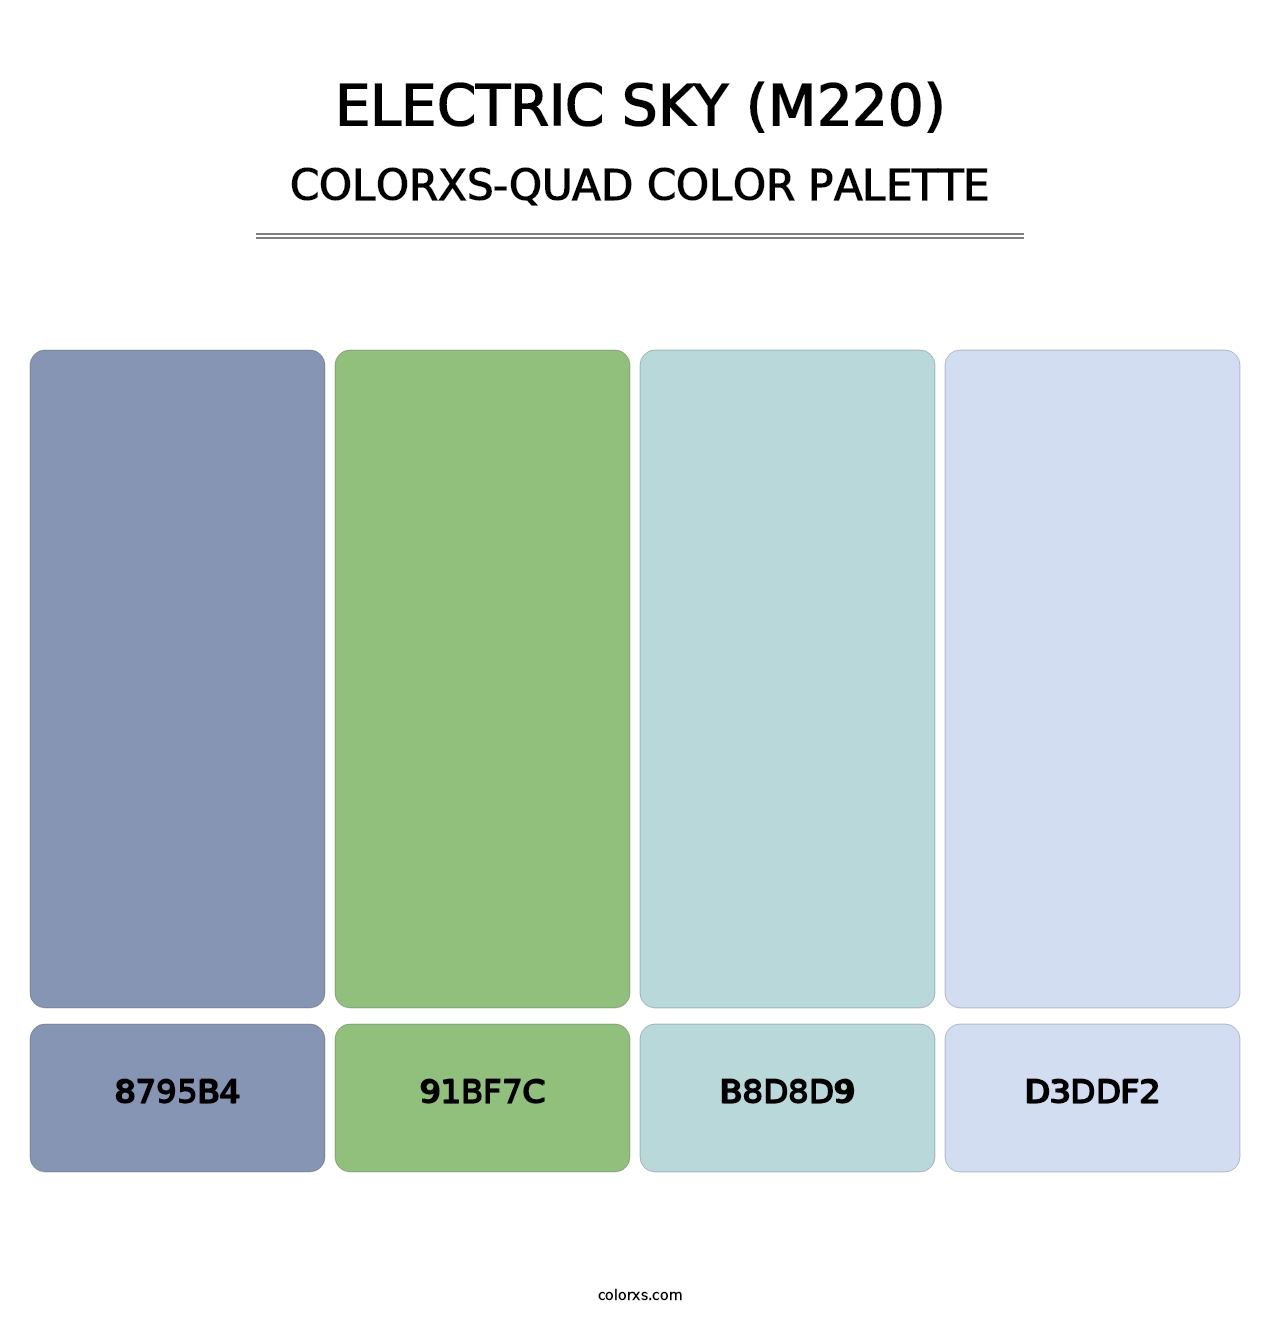 Electric Sky (M220) - Colorxs Quad Palette